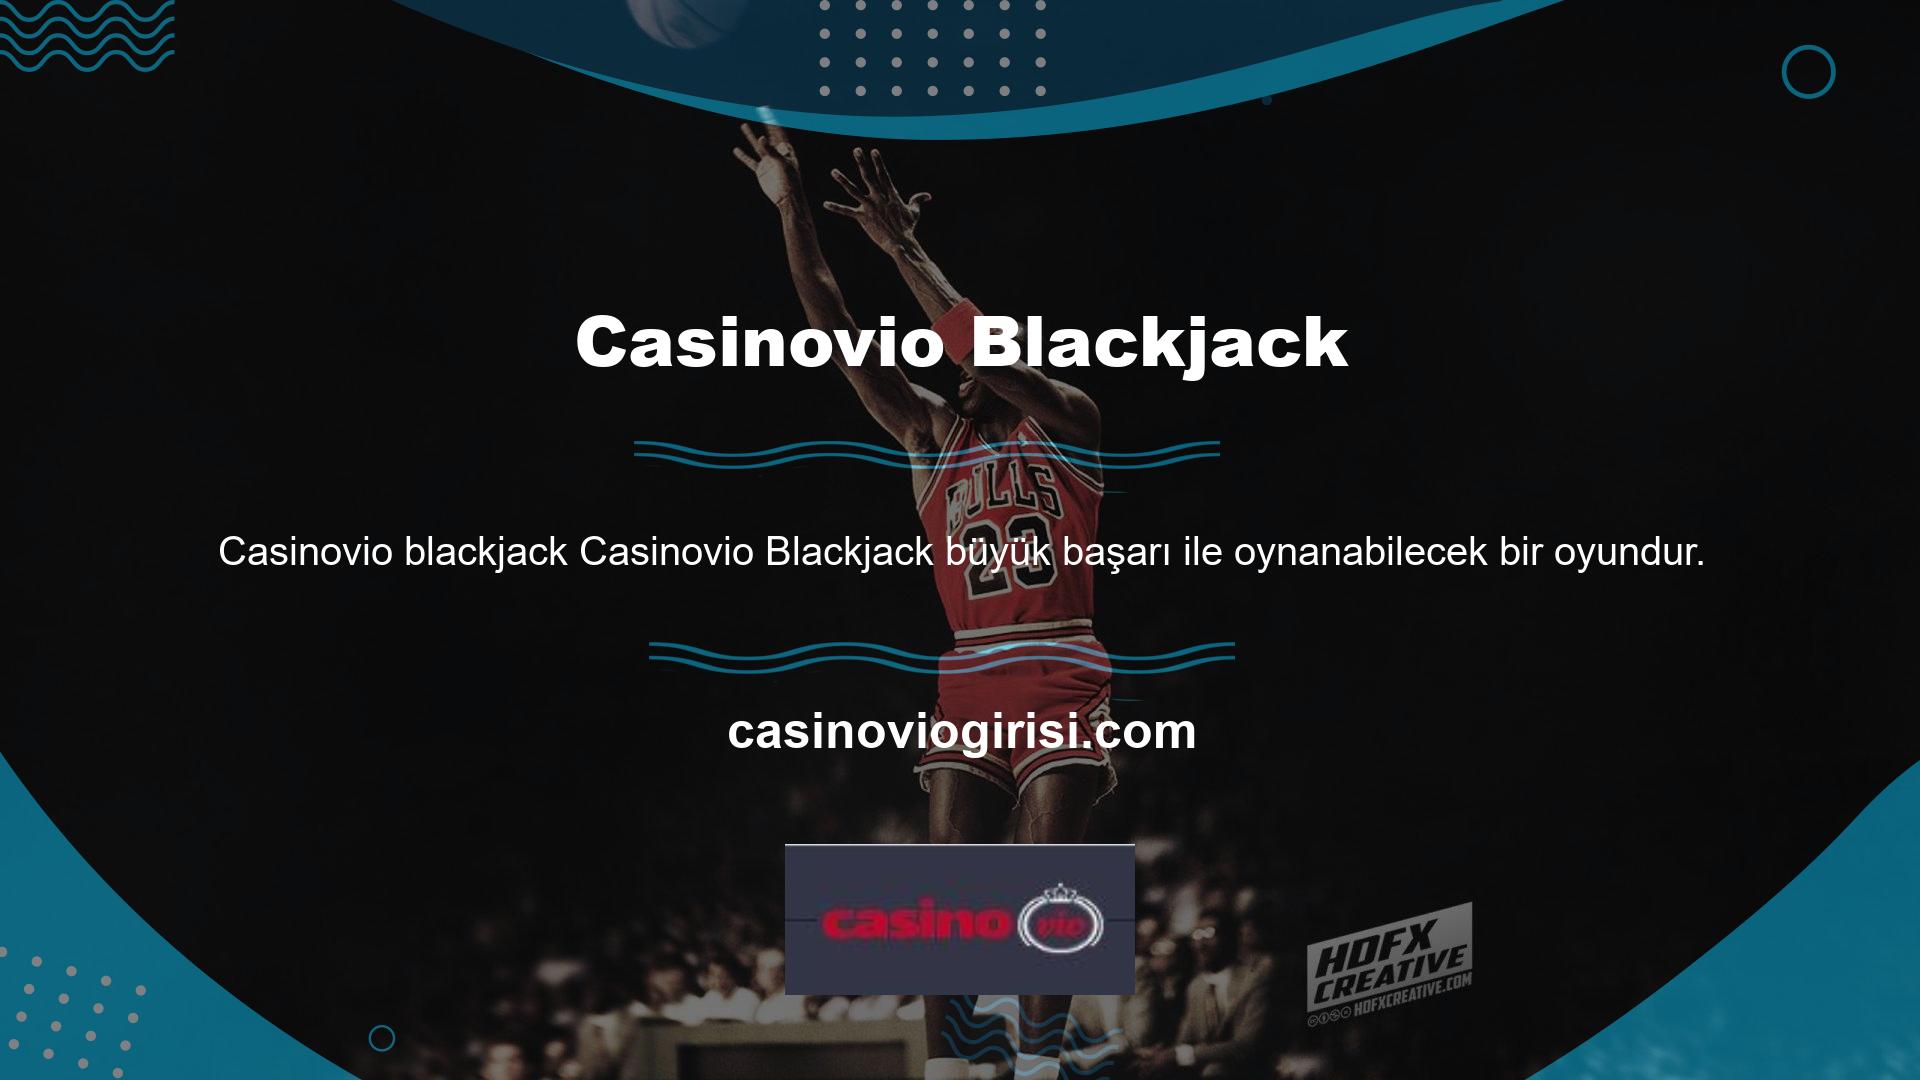 Blackjack'te canlı masalarda büyük kazanabilirsiniz